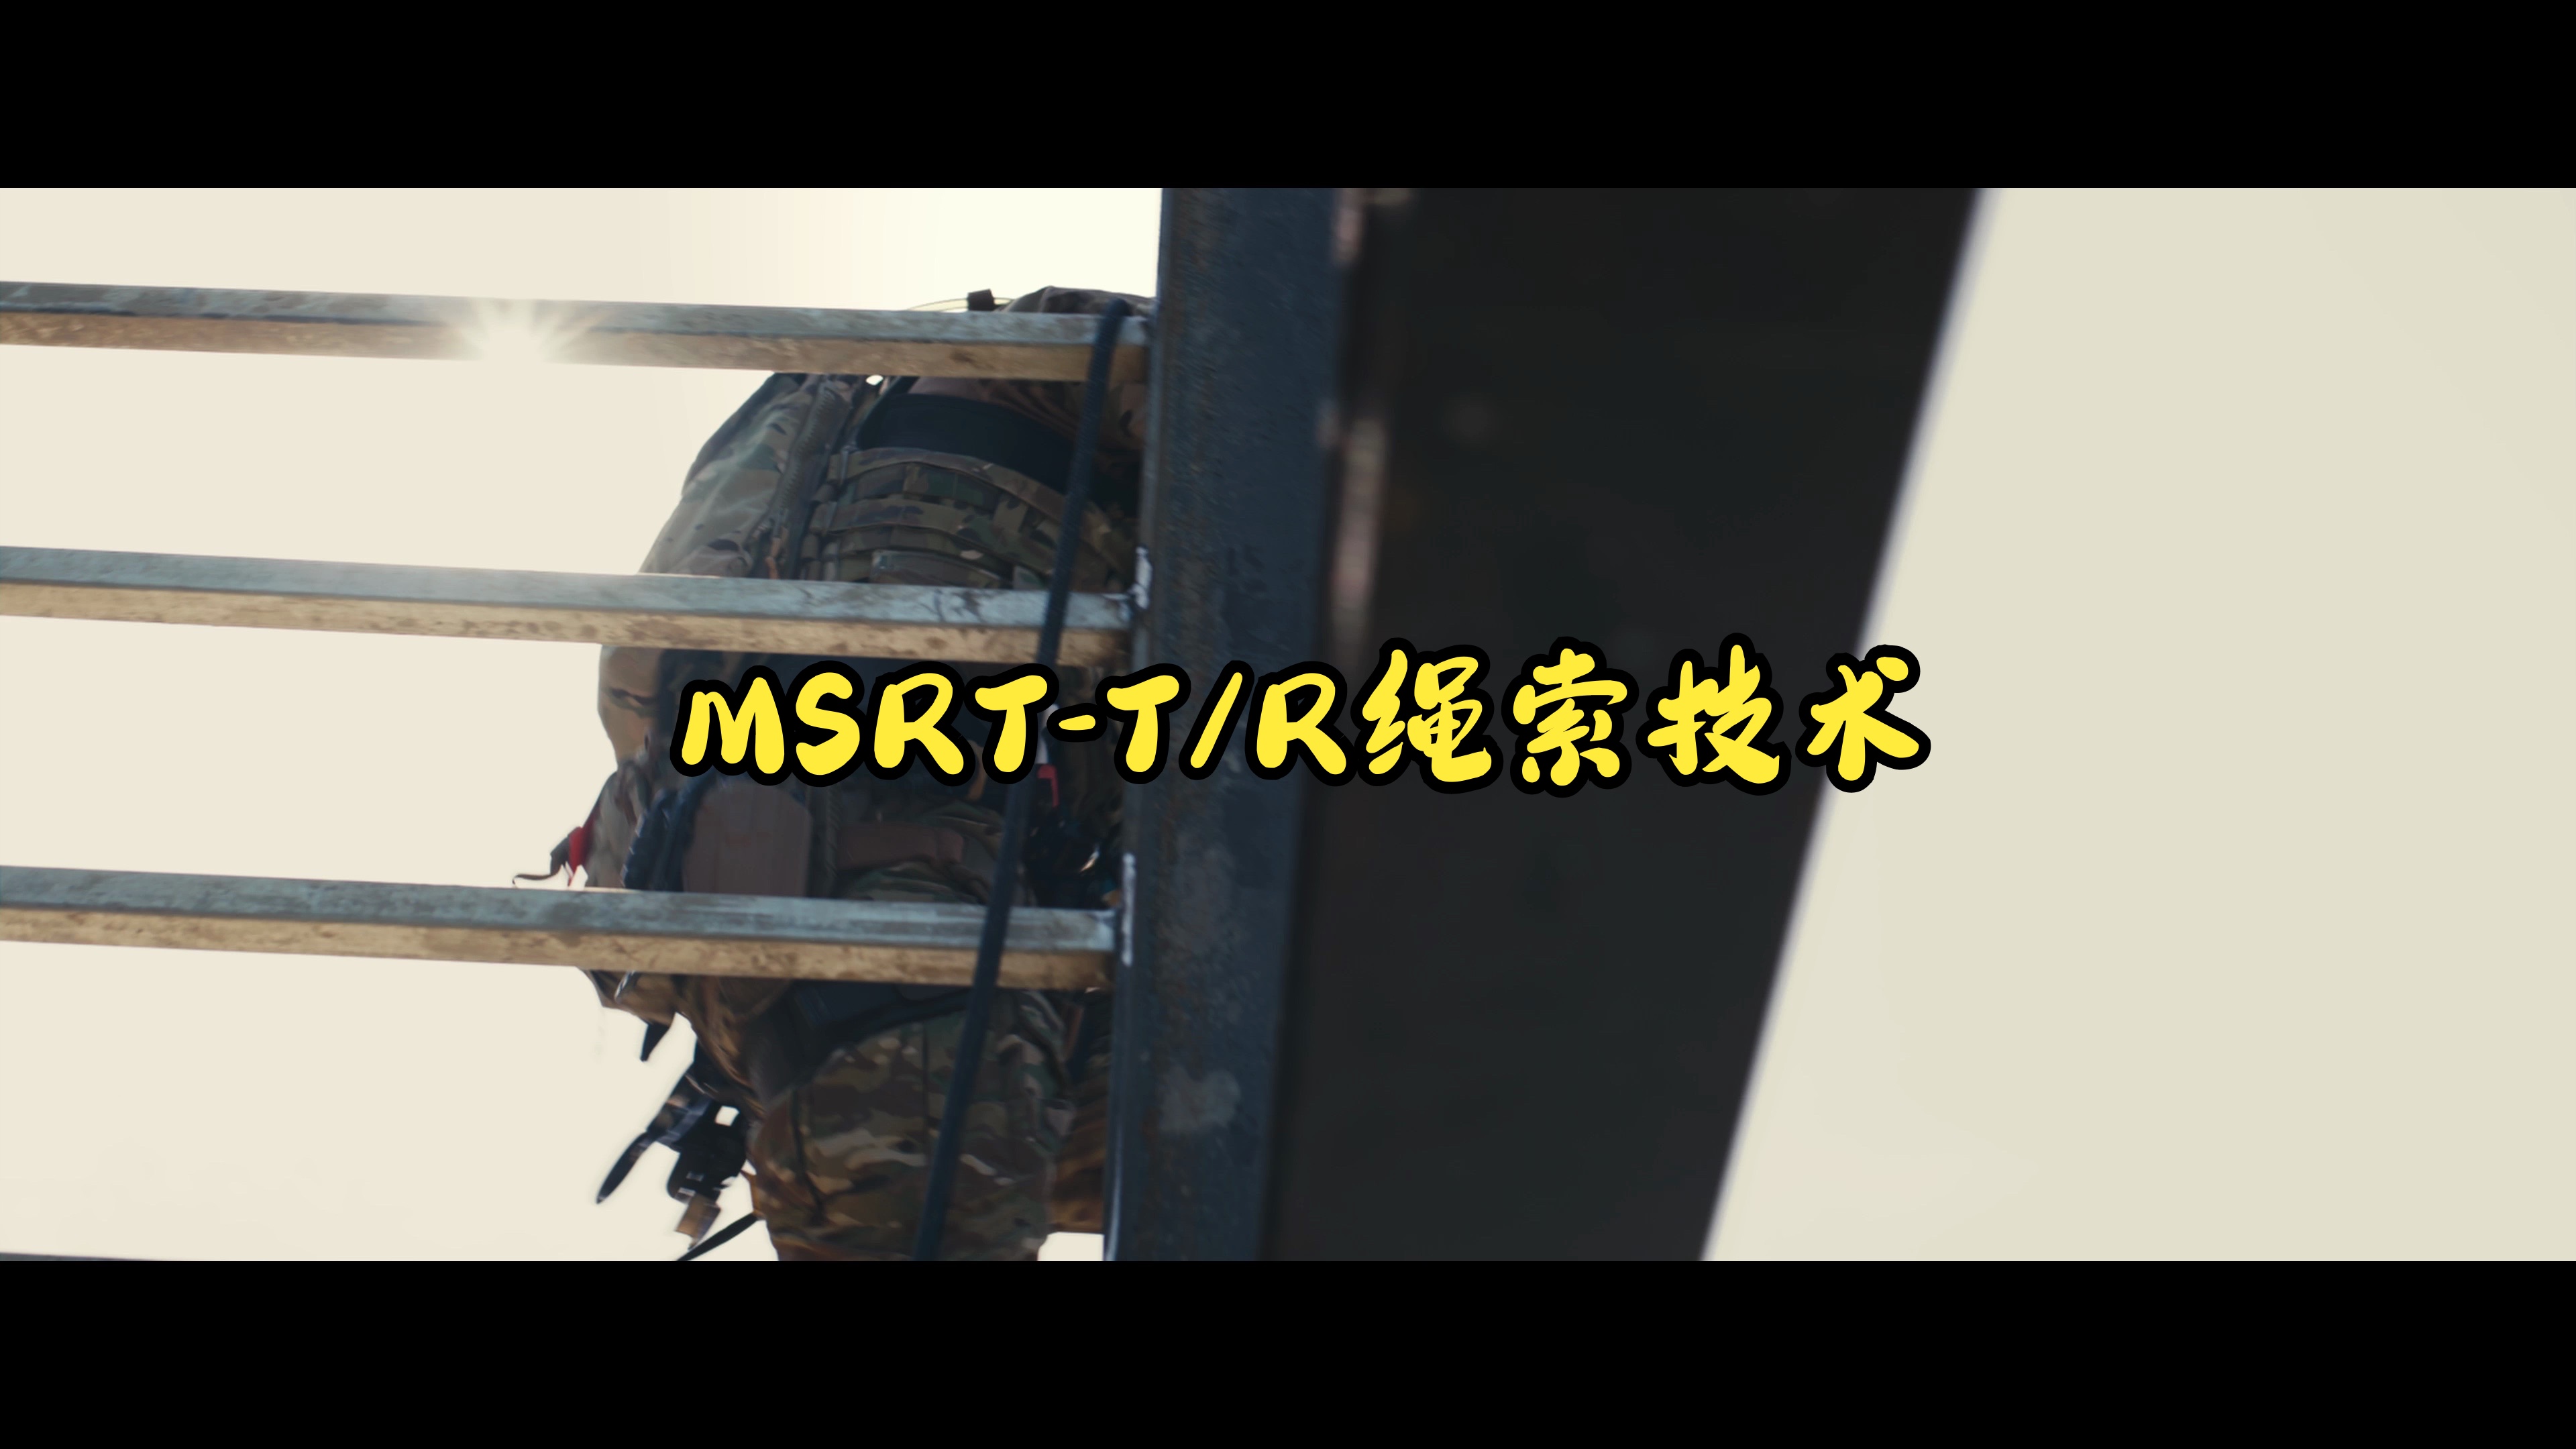 “五一”MSRT-T/R绳索技术，战斗绳索篇训练预告